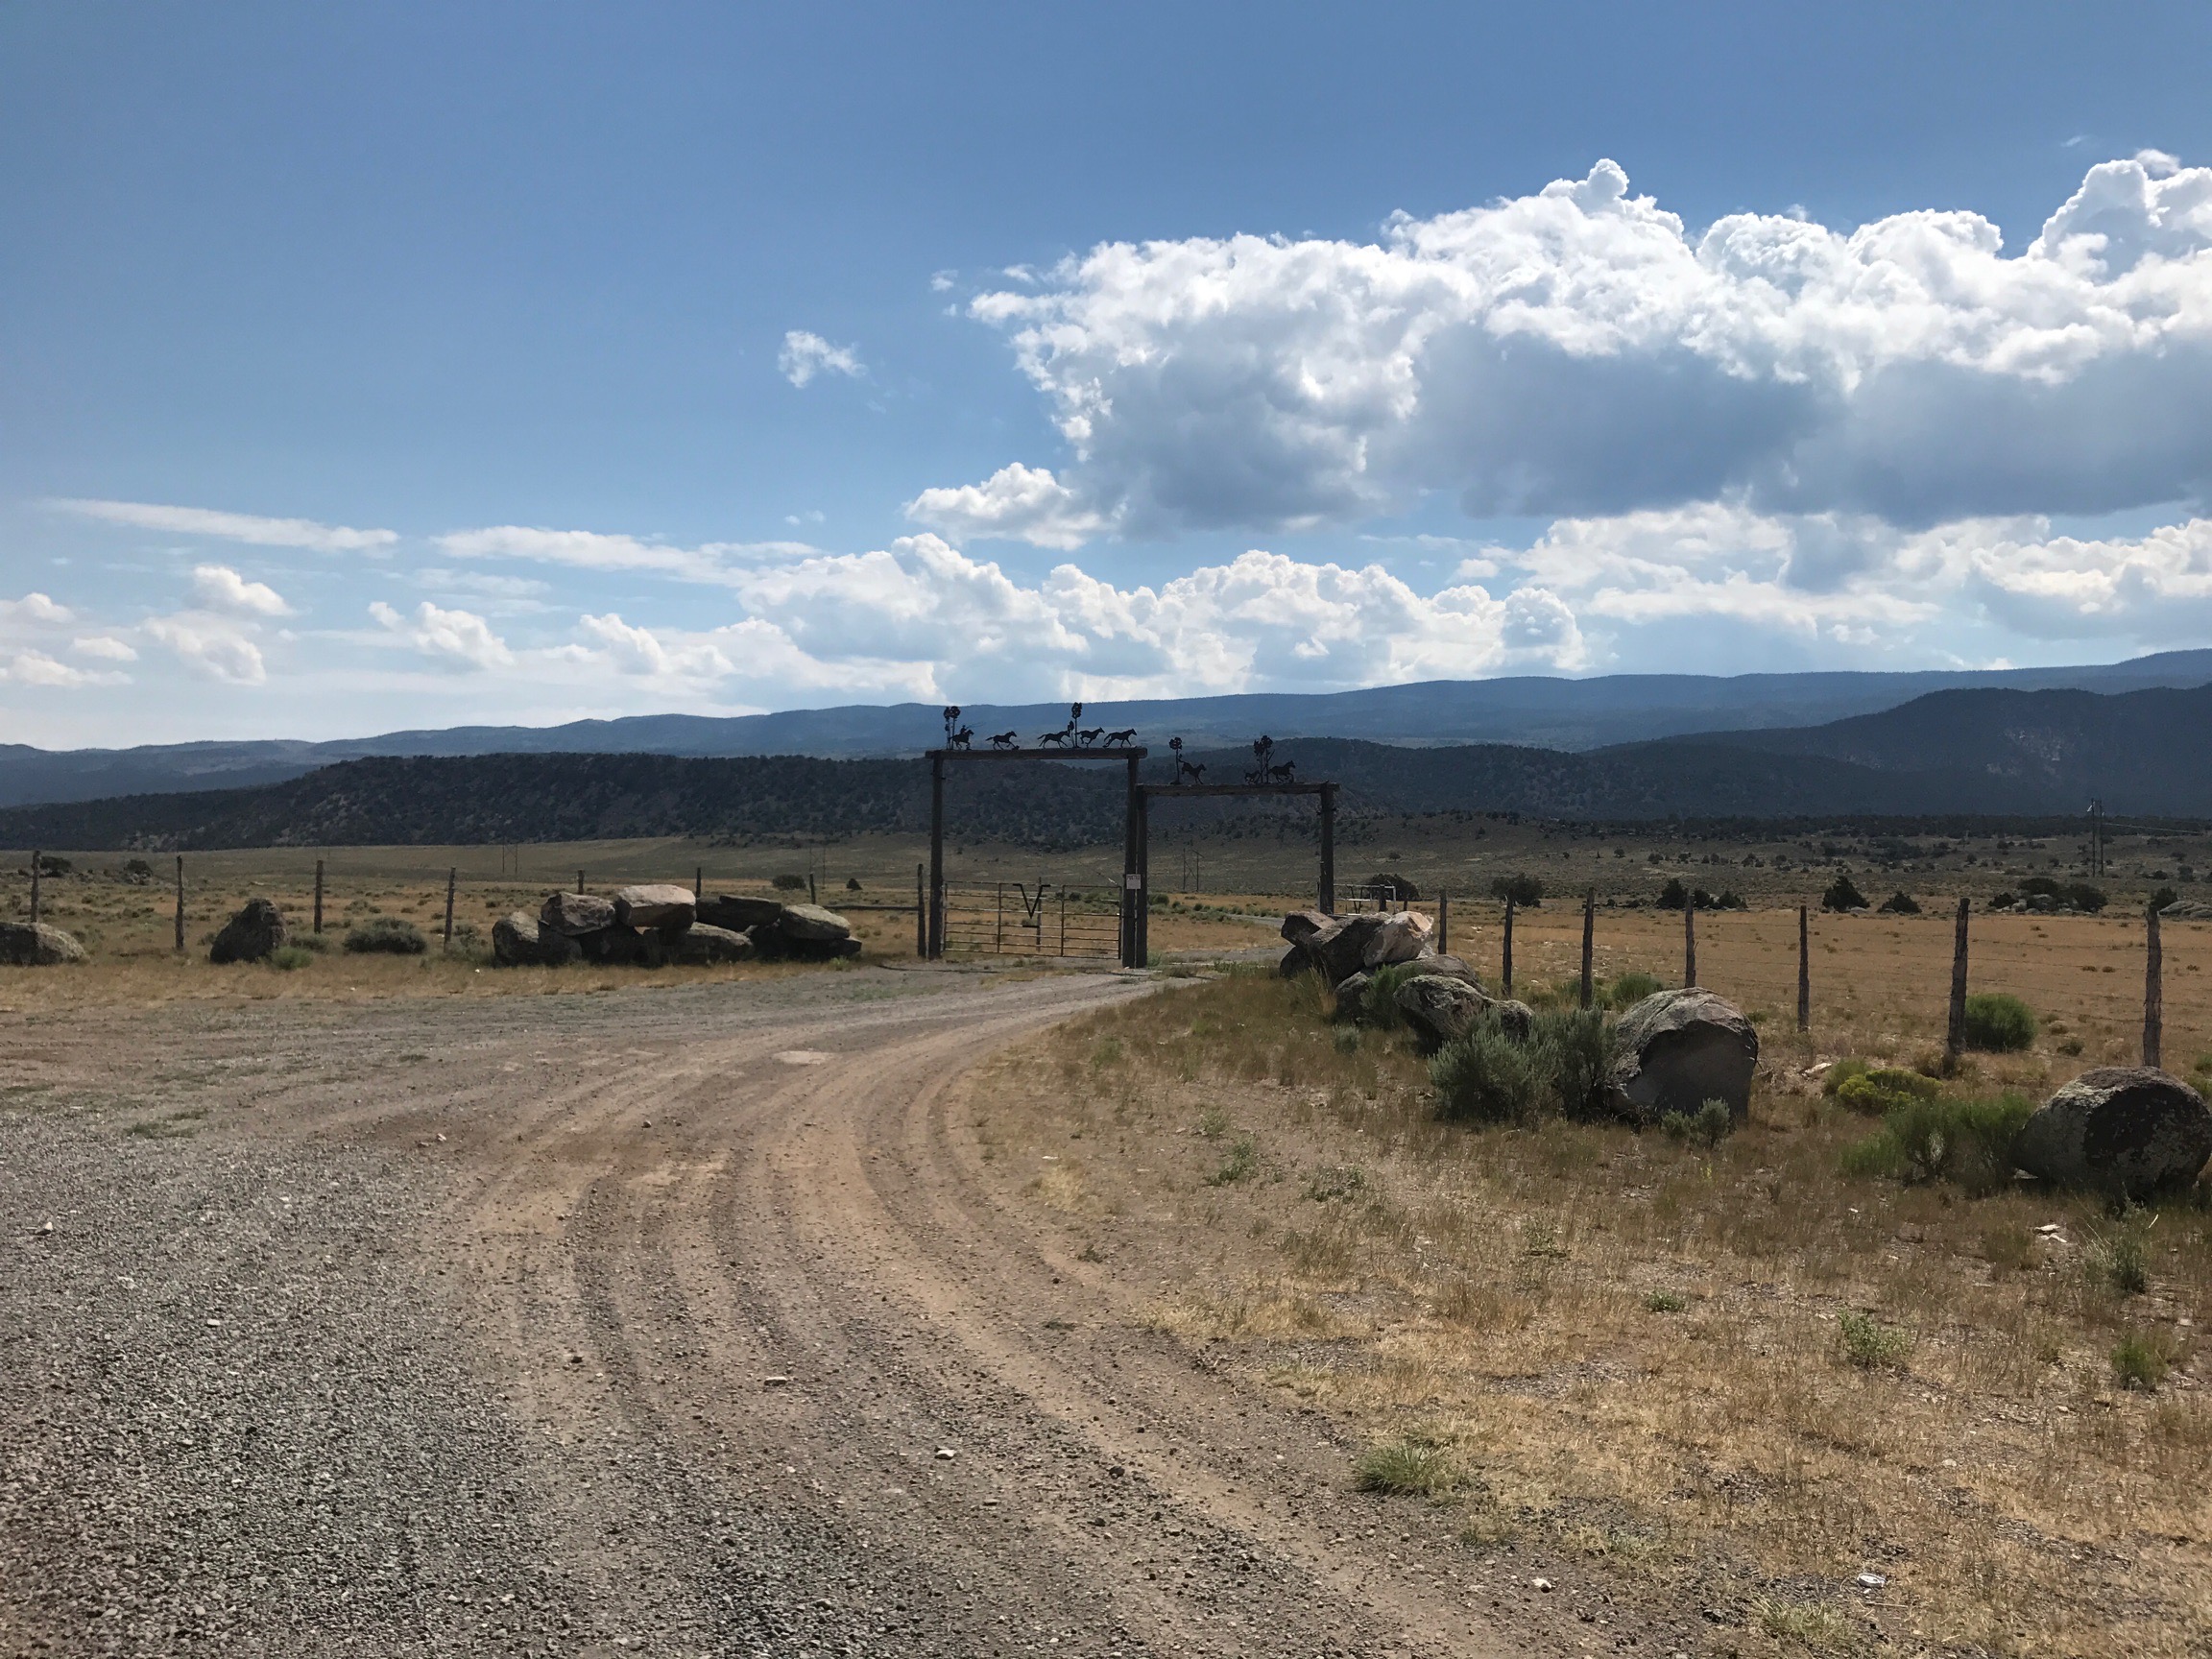 Des entrées de ranchs sont présents tout le long de la route